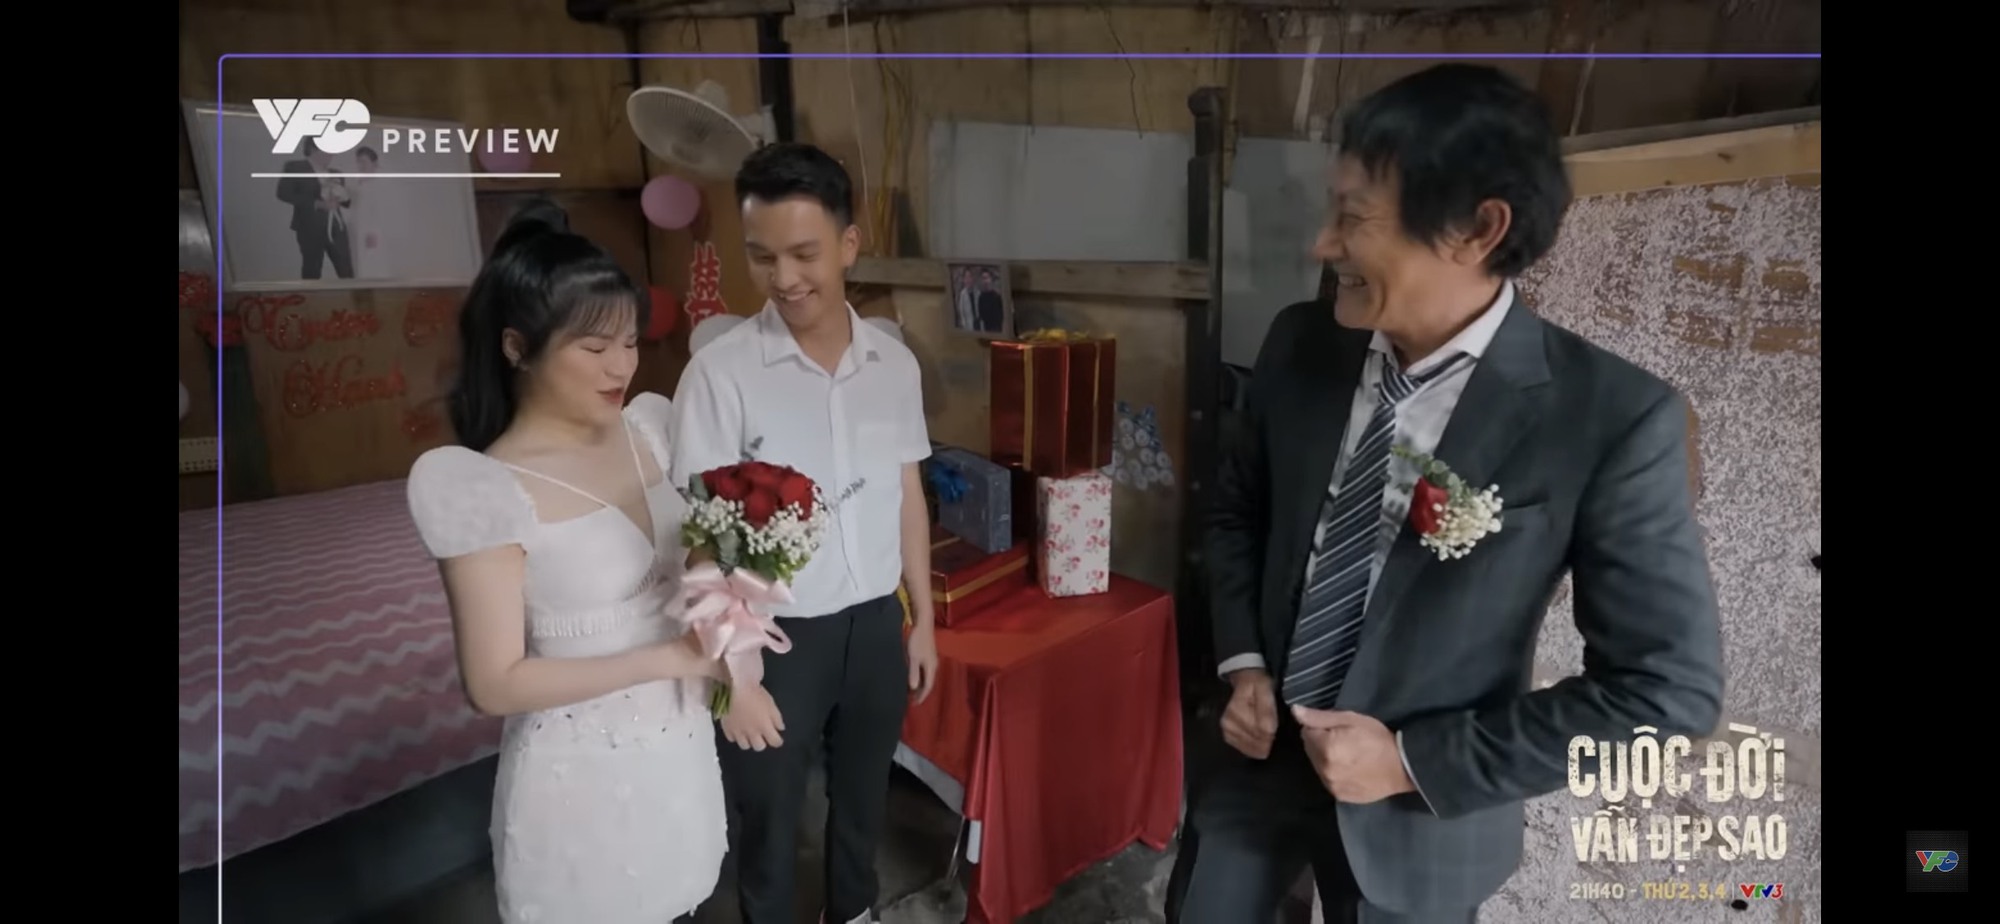 Hé lộ tập cuối phim &quot;Cuộc đời vẫn đẹp sao&quot;: Nhân vật lạ mặt xuất hiện trong đám cưới Lưu Luyến - Ảnh 2.